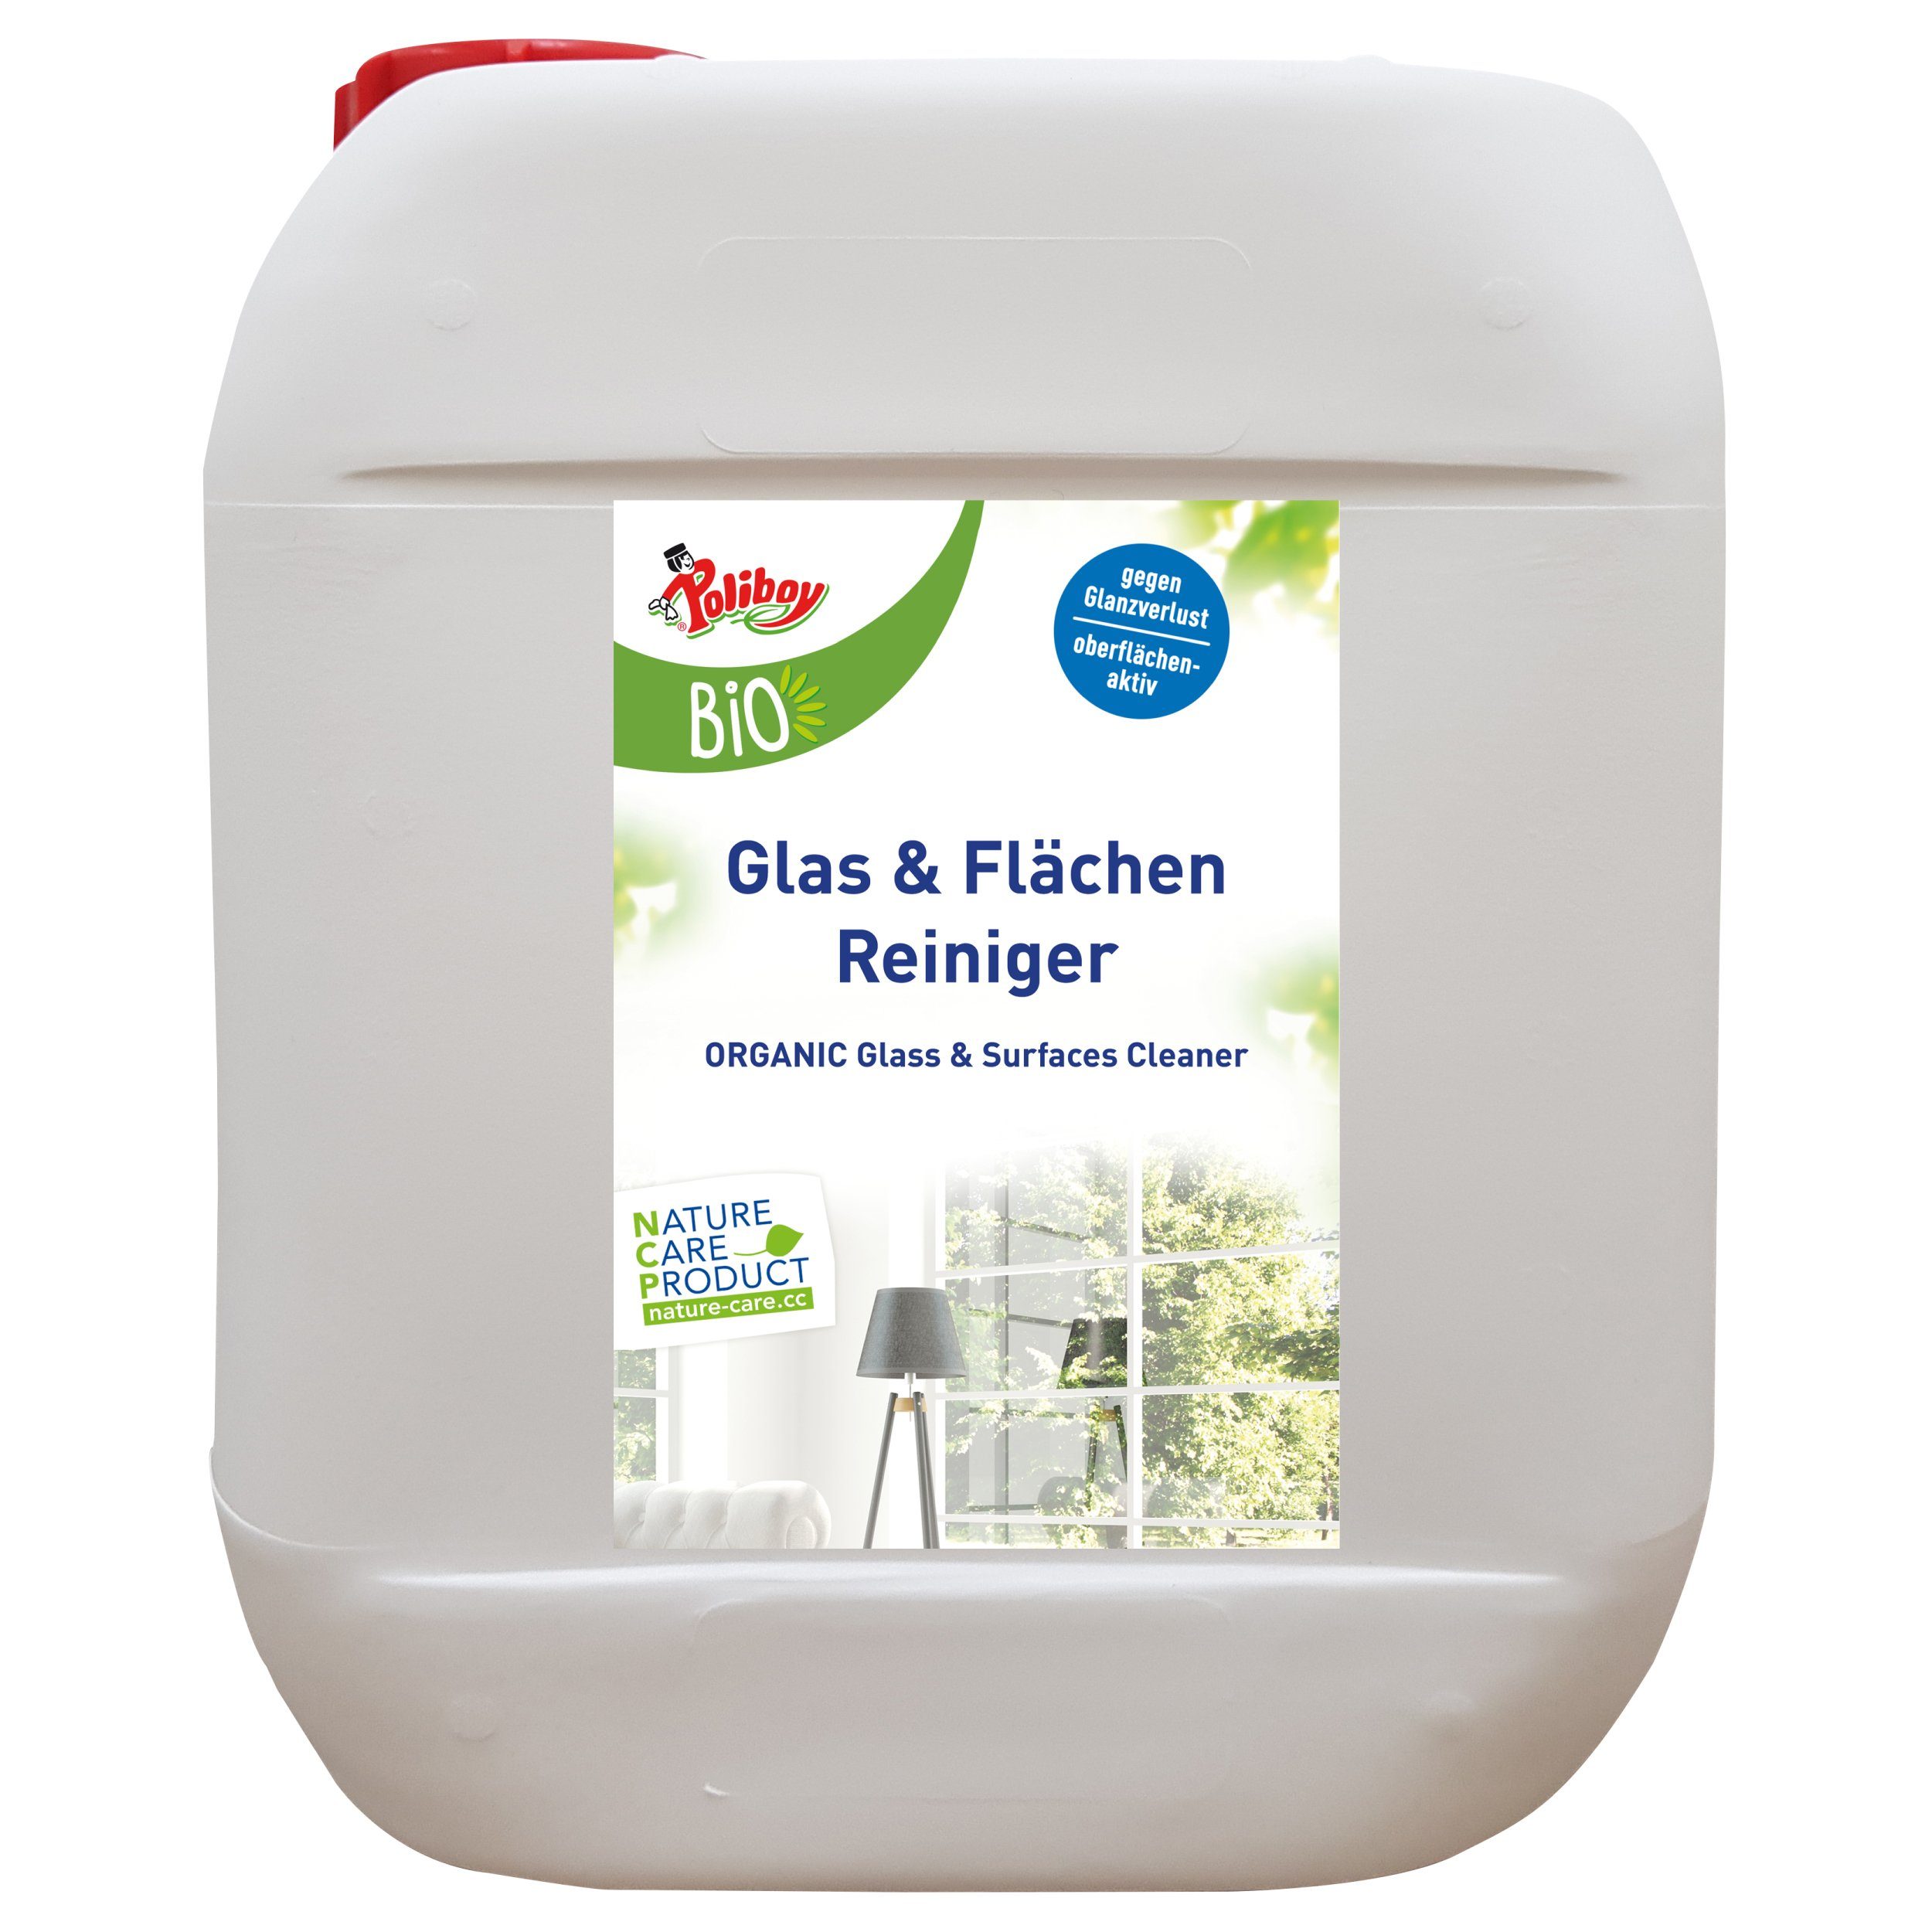 poliboy - 5 Liter - Bio Flächen- & Glasreiniger (zur einfachen Reinigung von spiegelnden Oberflächen - Made in Germany)